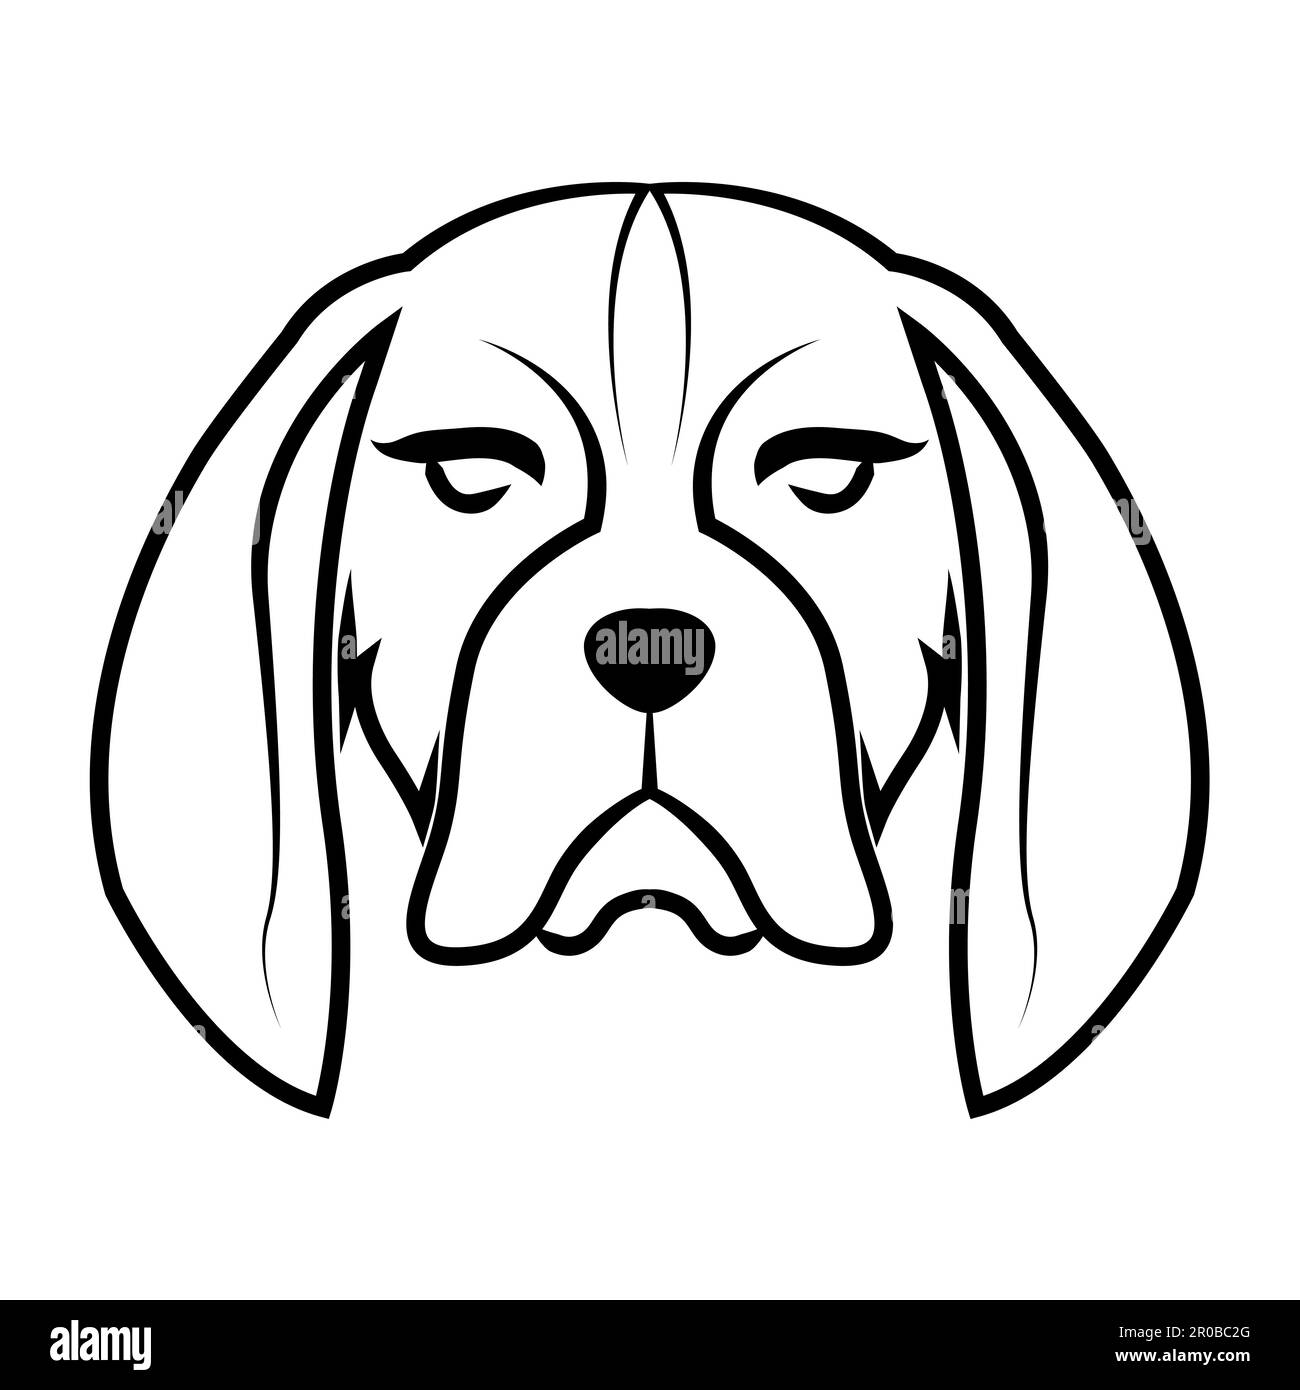 Dessin au trait noir et blanc de l'avant de la tête de chien beagle bonne utilisation pour symbole mascotte icône avatar tatouage T logo de chemise ou tout autre dessin Illustration de Vecteur